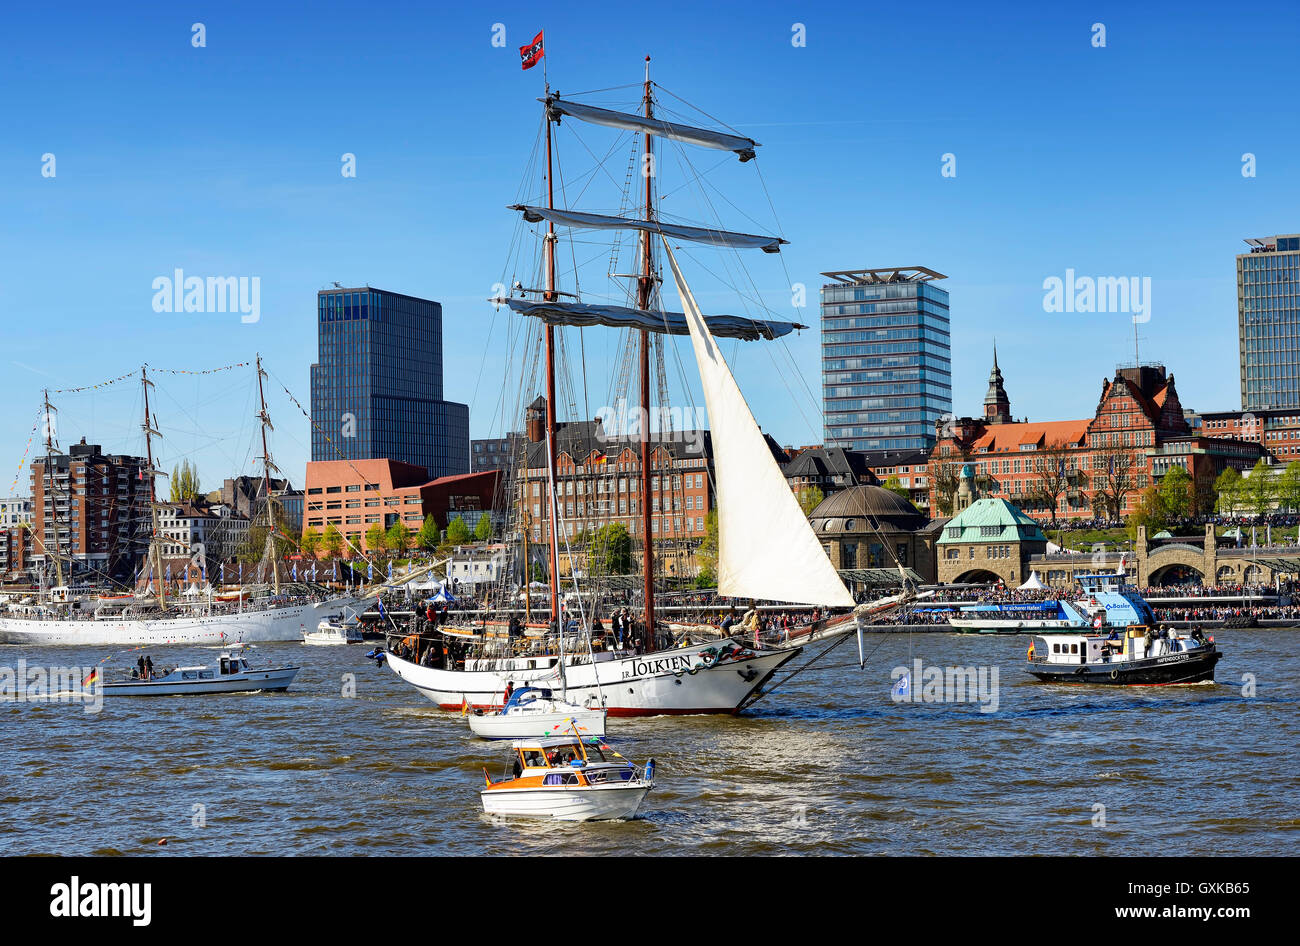 Einlaufparade zum Hafengeburtstag mit dem Segelschiff J.R. Tolkien in Amburgo, Deutschland, Europa Foto Stock